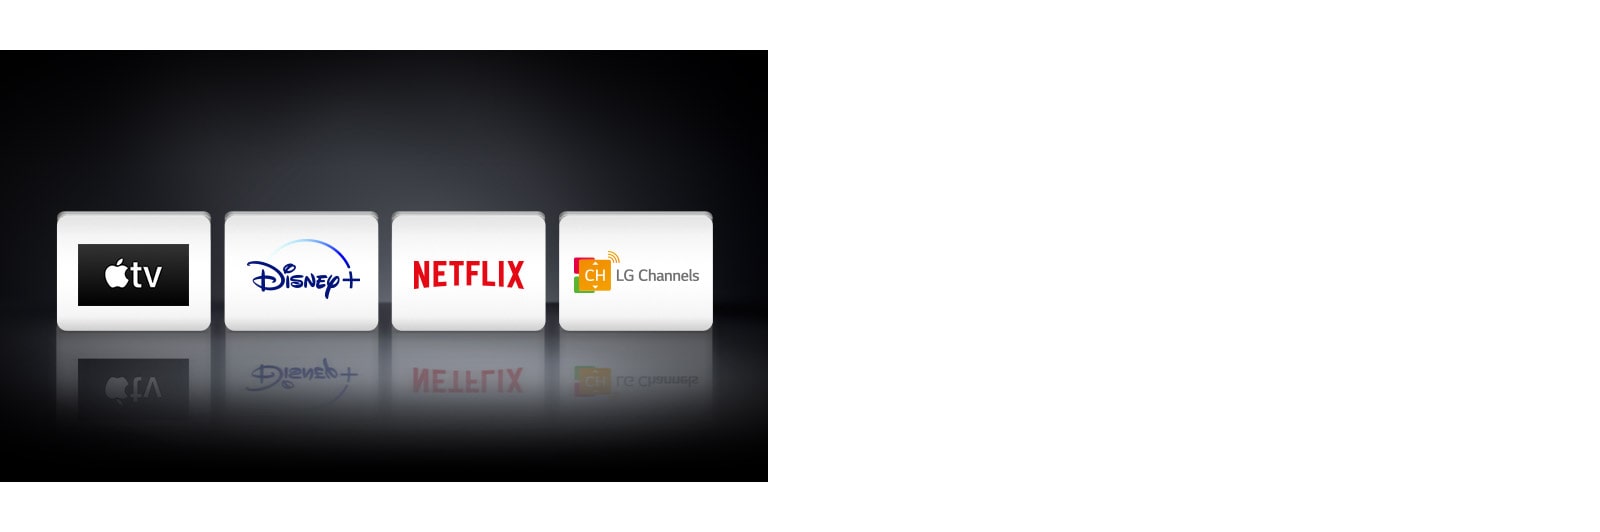 Se muestran cuatro logotipos de aplicaciones de izquierda a derecha: Apple TV, Disney+, Netflix y los canales LG.